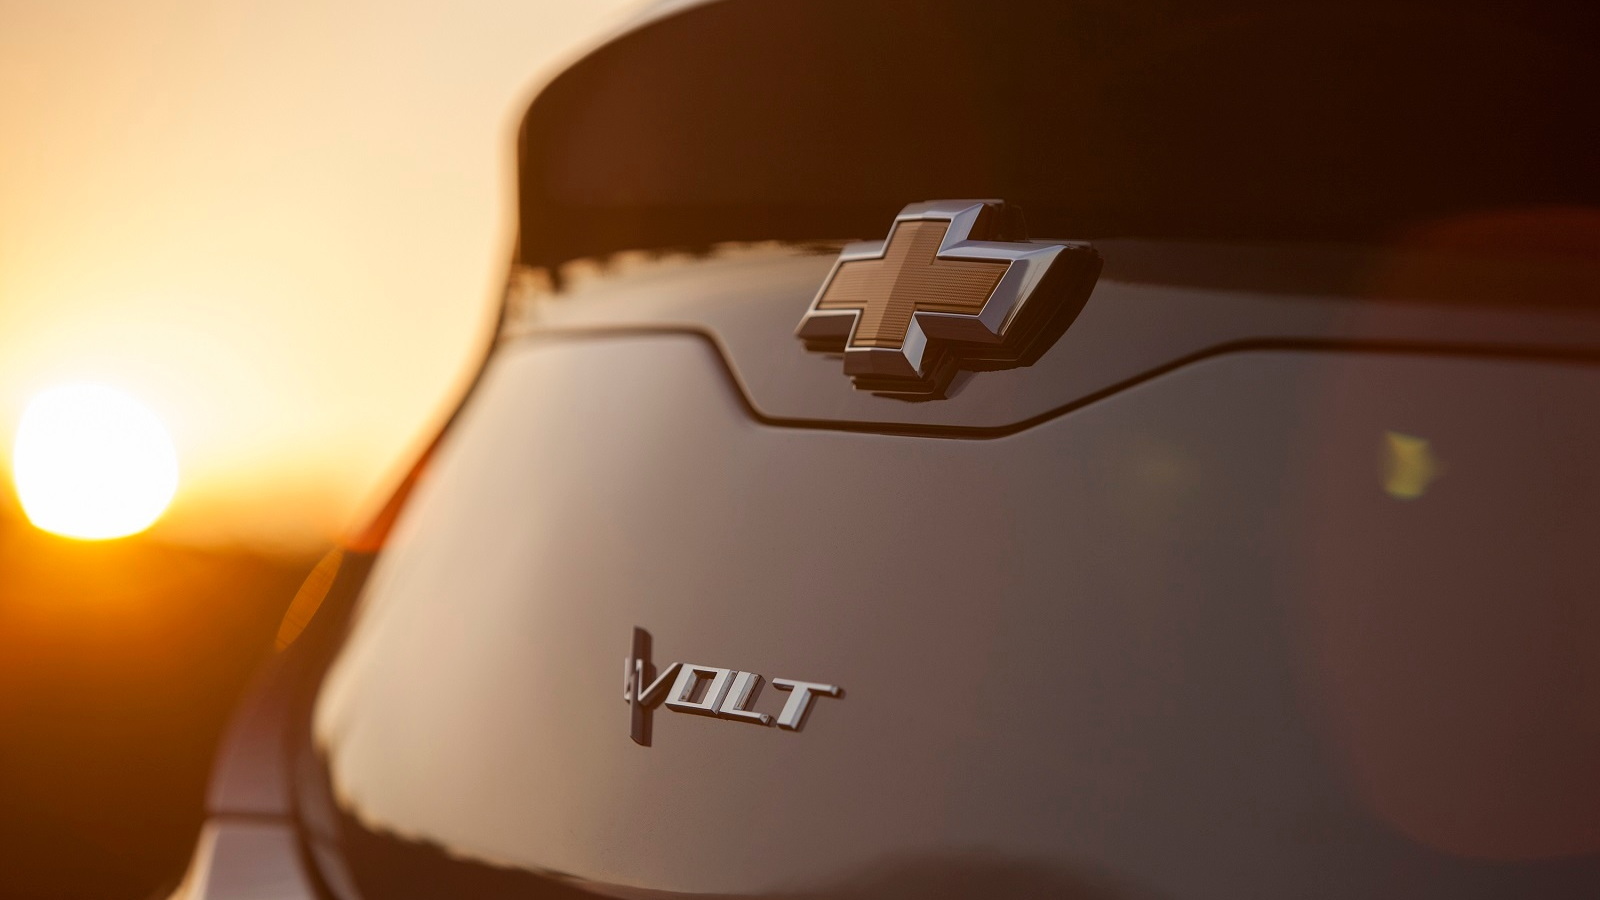 2016 Chevrolet Volt - first teaser image, Aug 2014